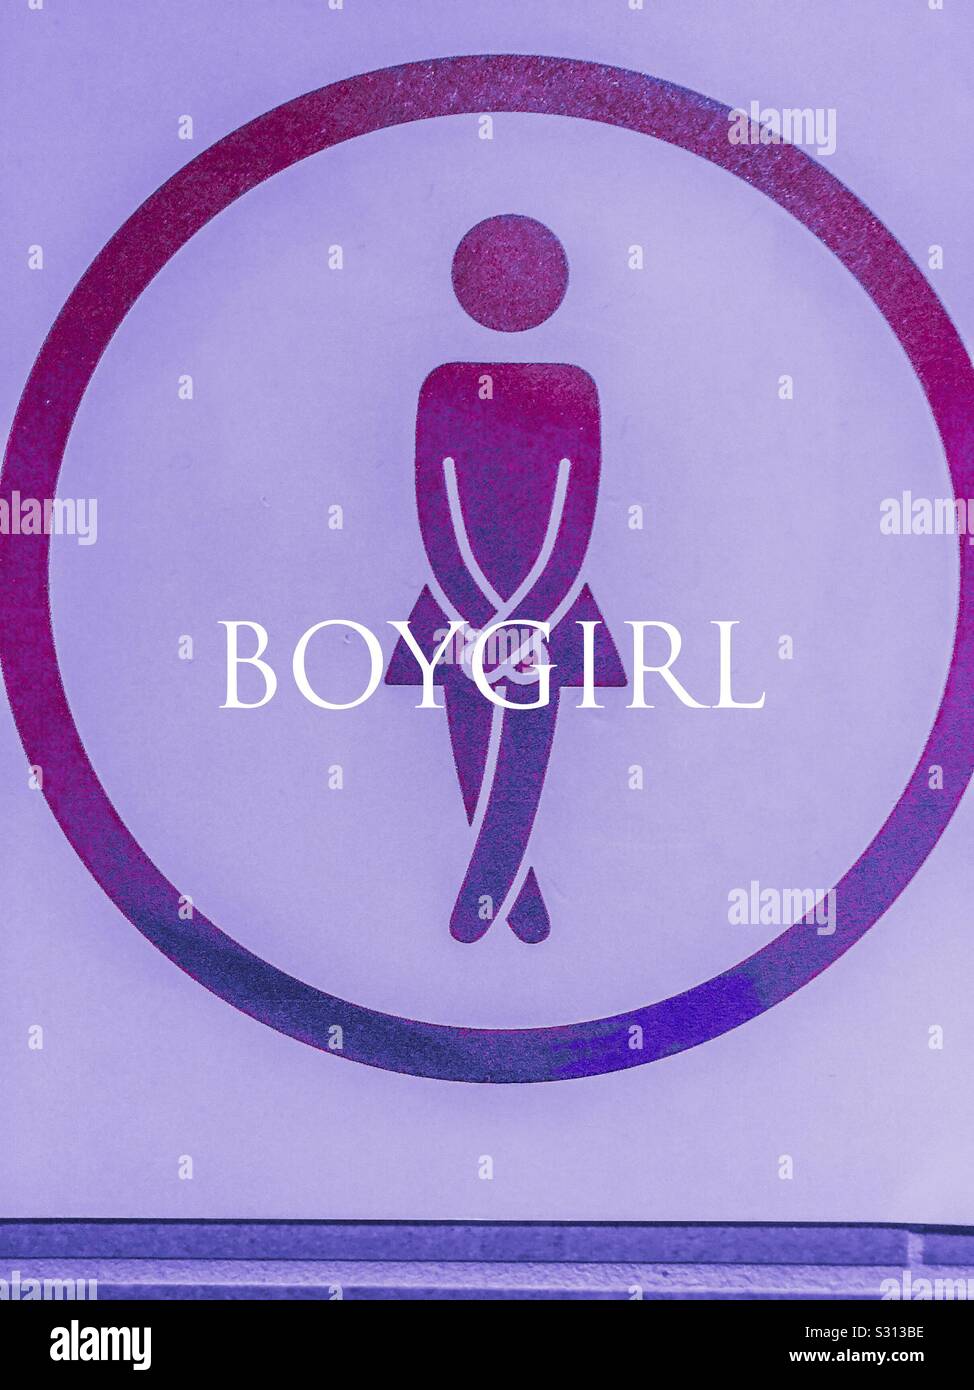 Flüssiges Geschlechtssymbol, das die traditionellen Farbtöne Blau und Pink kombiniert. Dies könnte Boy-Girl oder Girl-Boy oder Trans oder nicht-binär sein. All Inclusive. Stockfoto